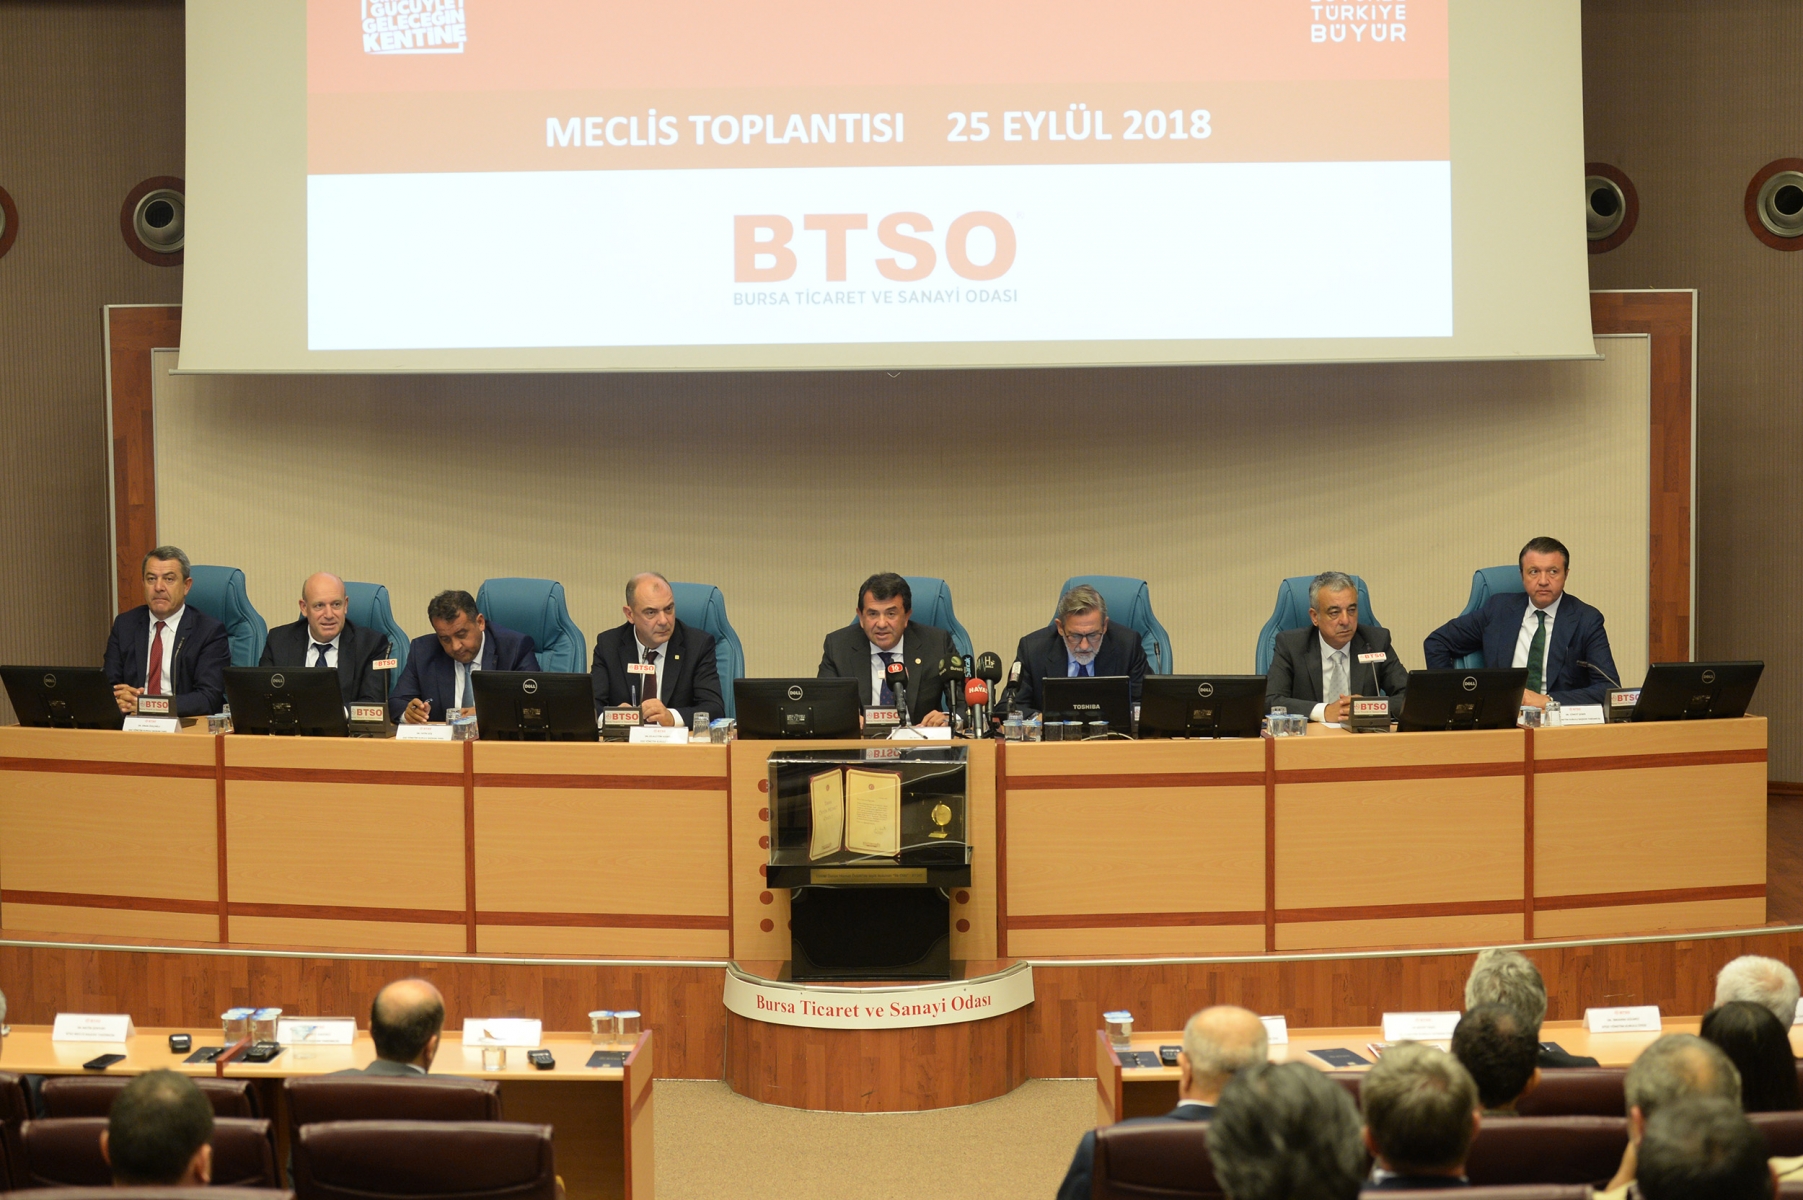 BTSO Müşterek Komiteler Toplantısı ve Eylül Ayı Meclis Toplantısı gerçekleştirildi. BTSO Yönetim Kurulu Başkanı İbrahim Burkay,